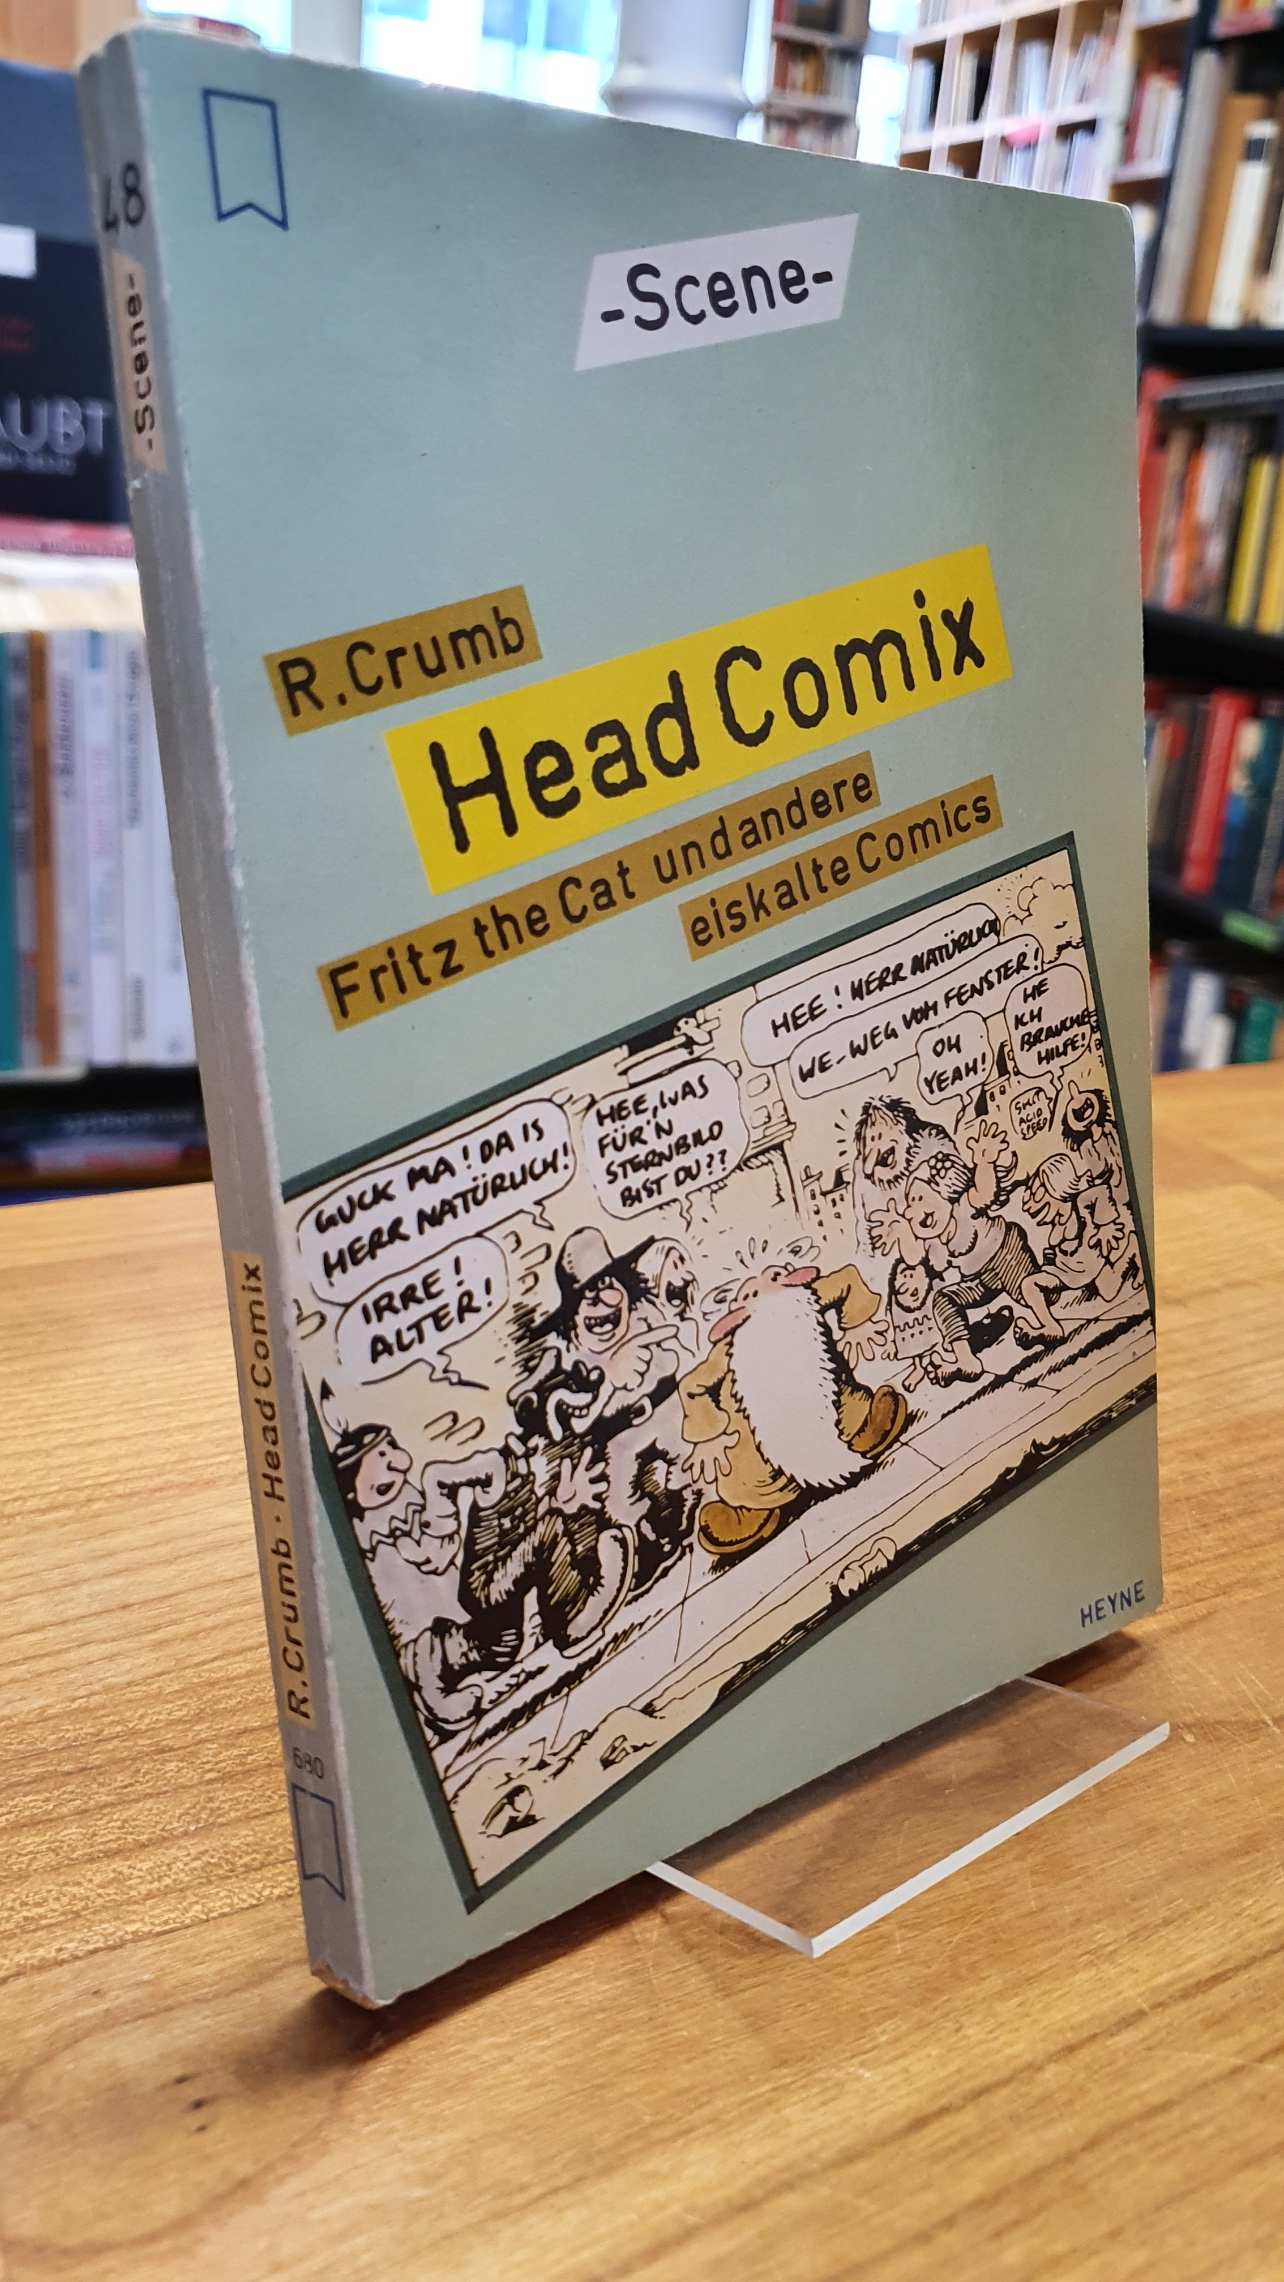 Crumb, Head Comix – Fritz the Cat und andere eiskalte Comics,